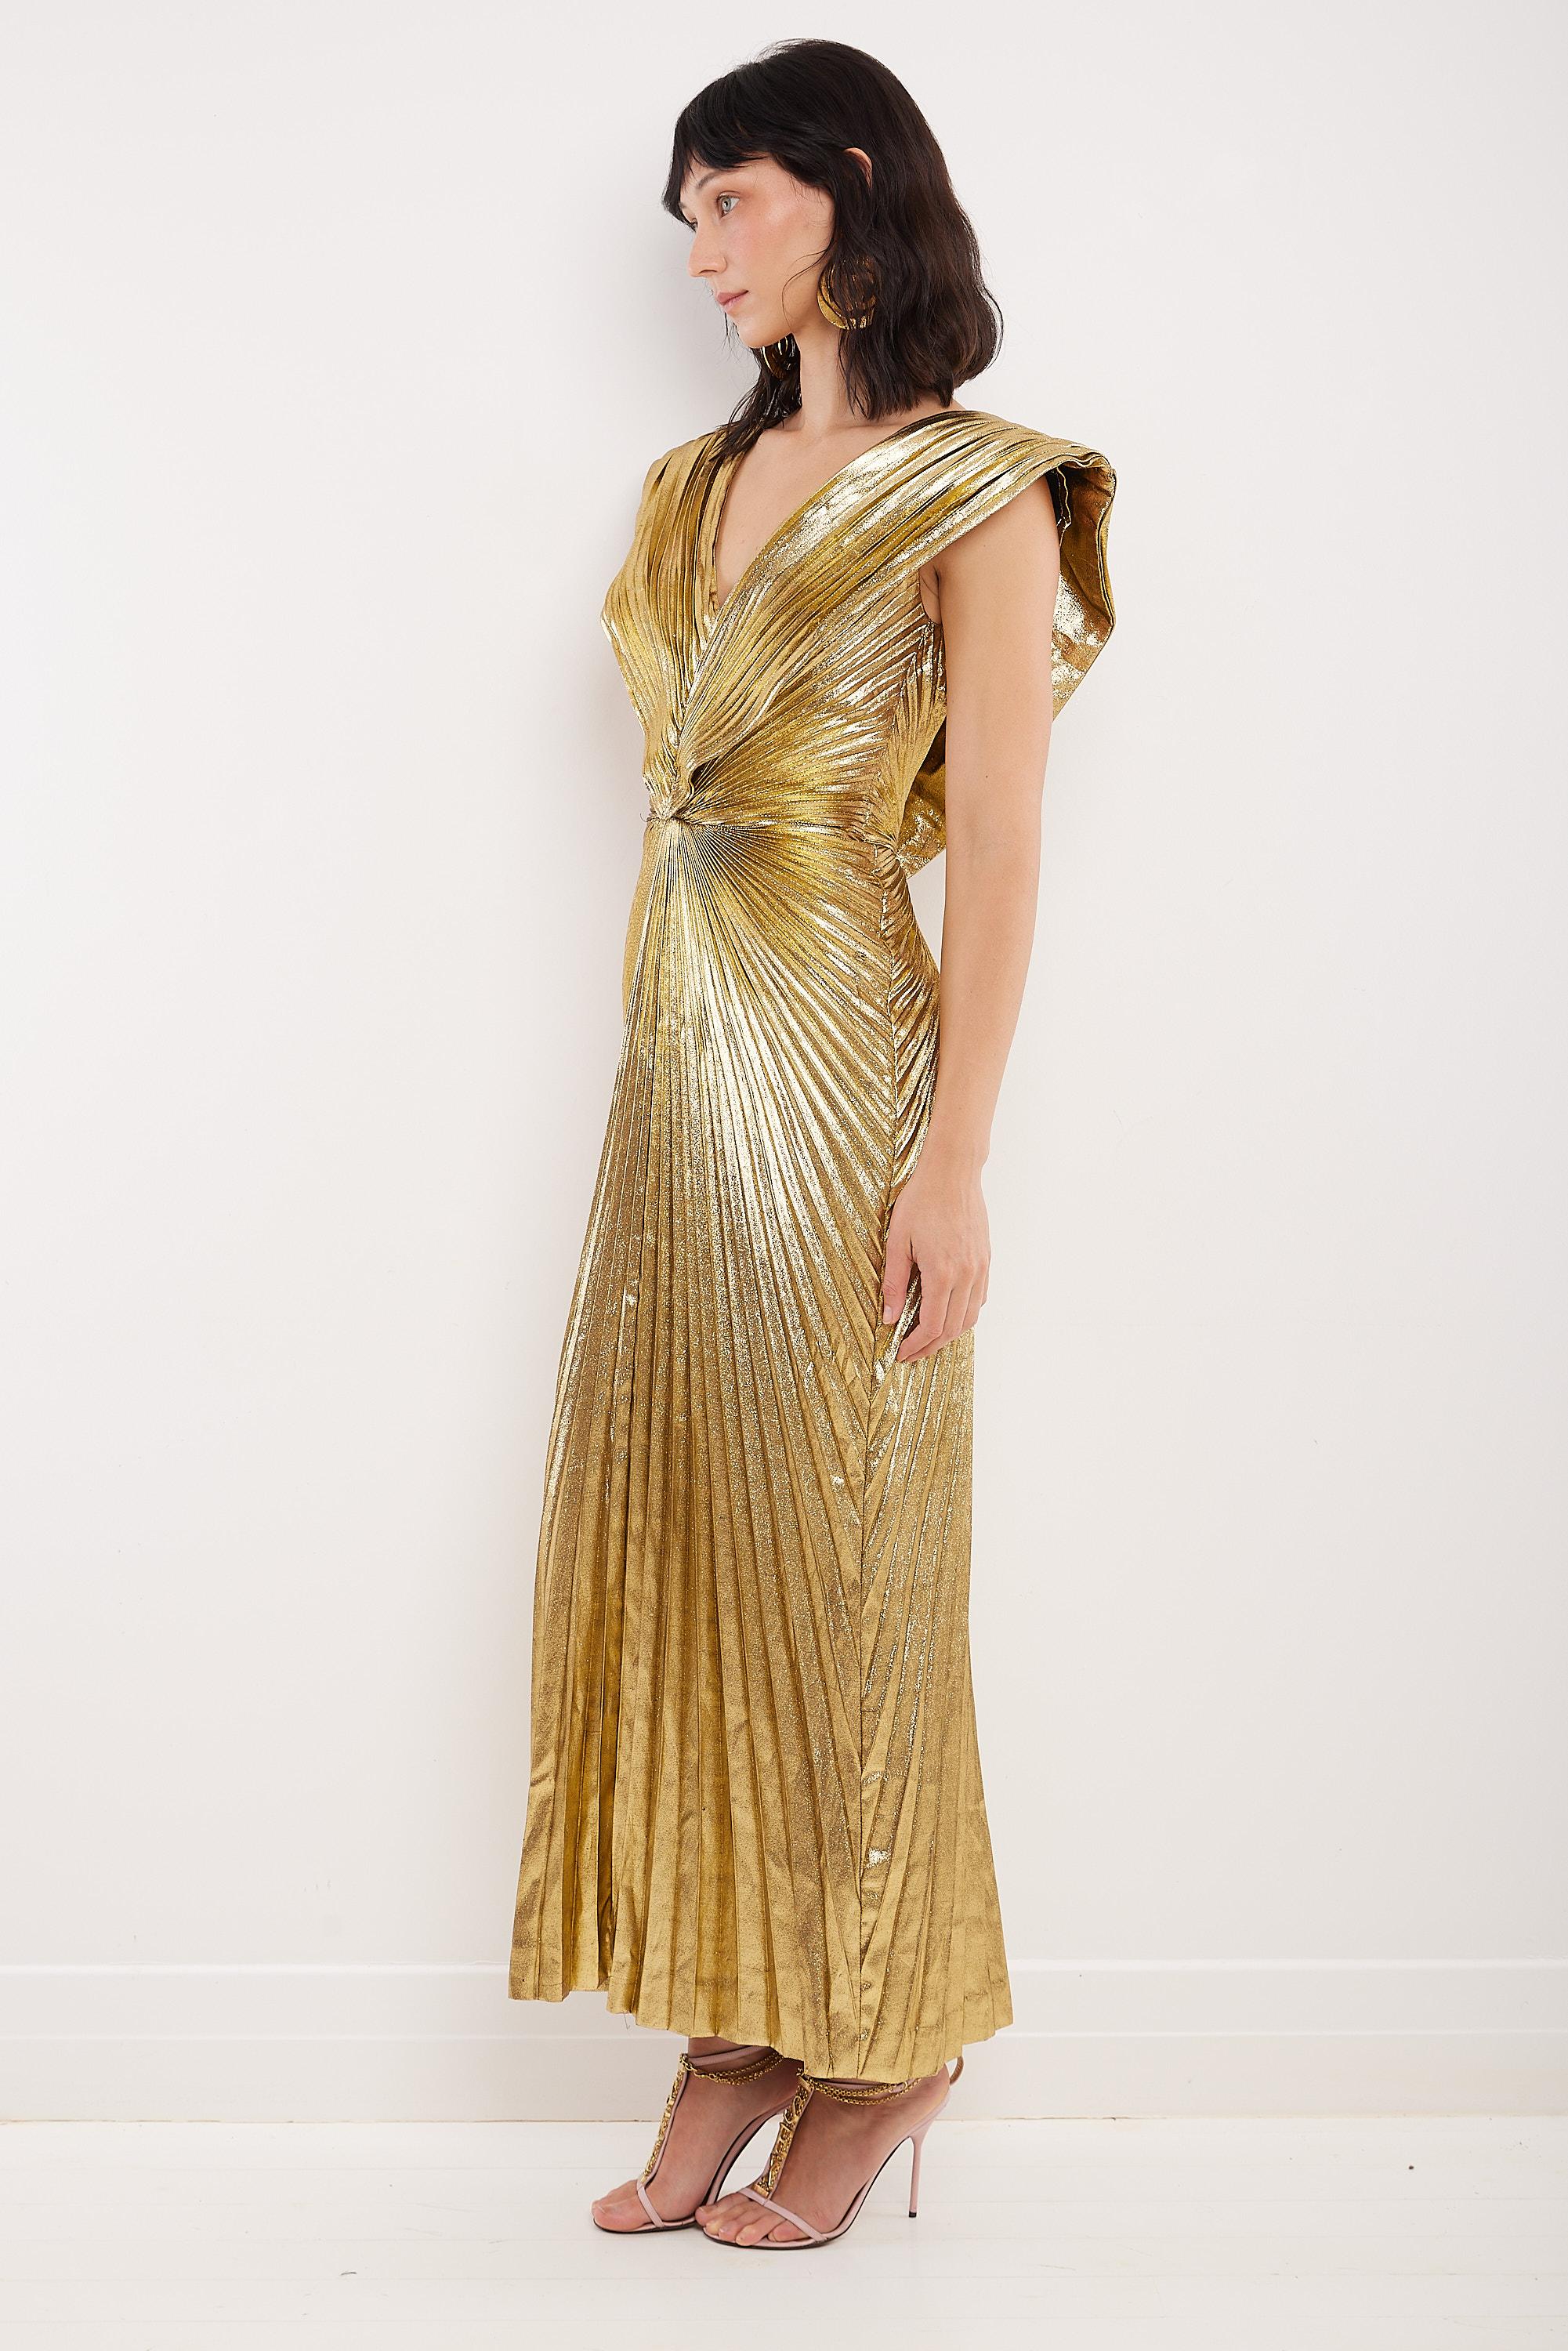 Véritable pièce de musée, cette robe Loris Azzaro de 1988 a été portée par le top model Amber Valletta lors du Met Gala 2022 sur le thème du 